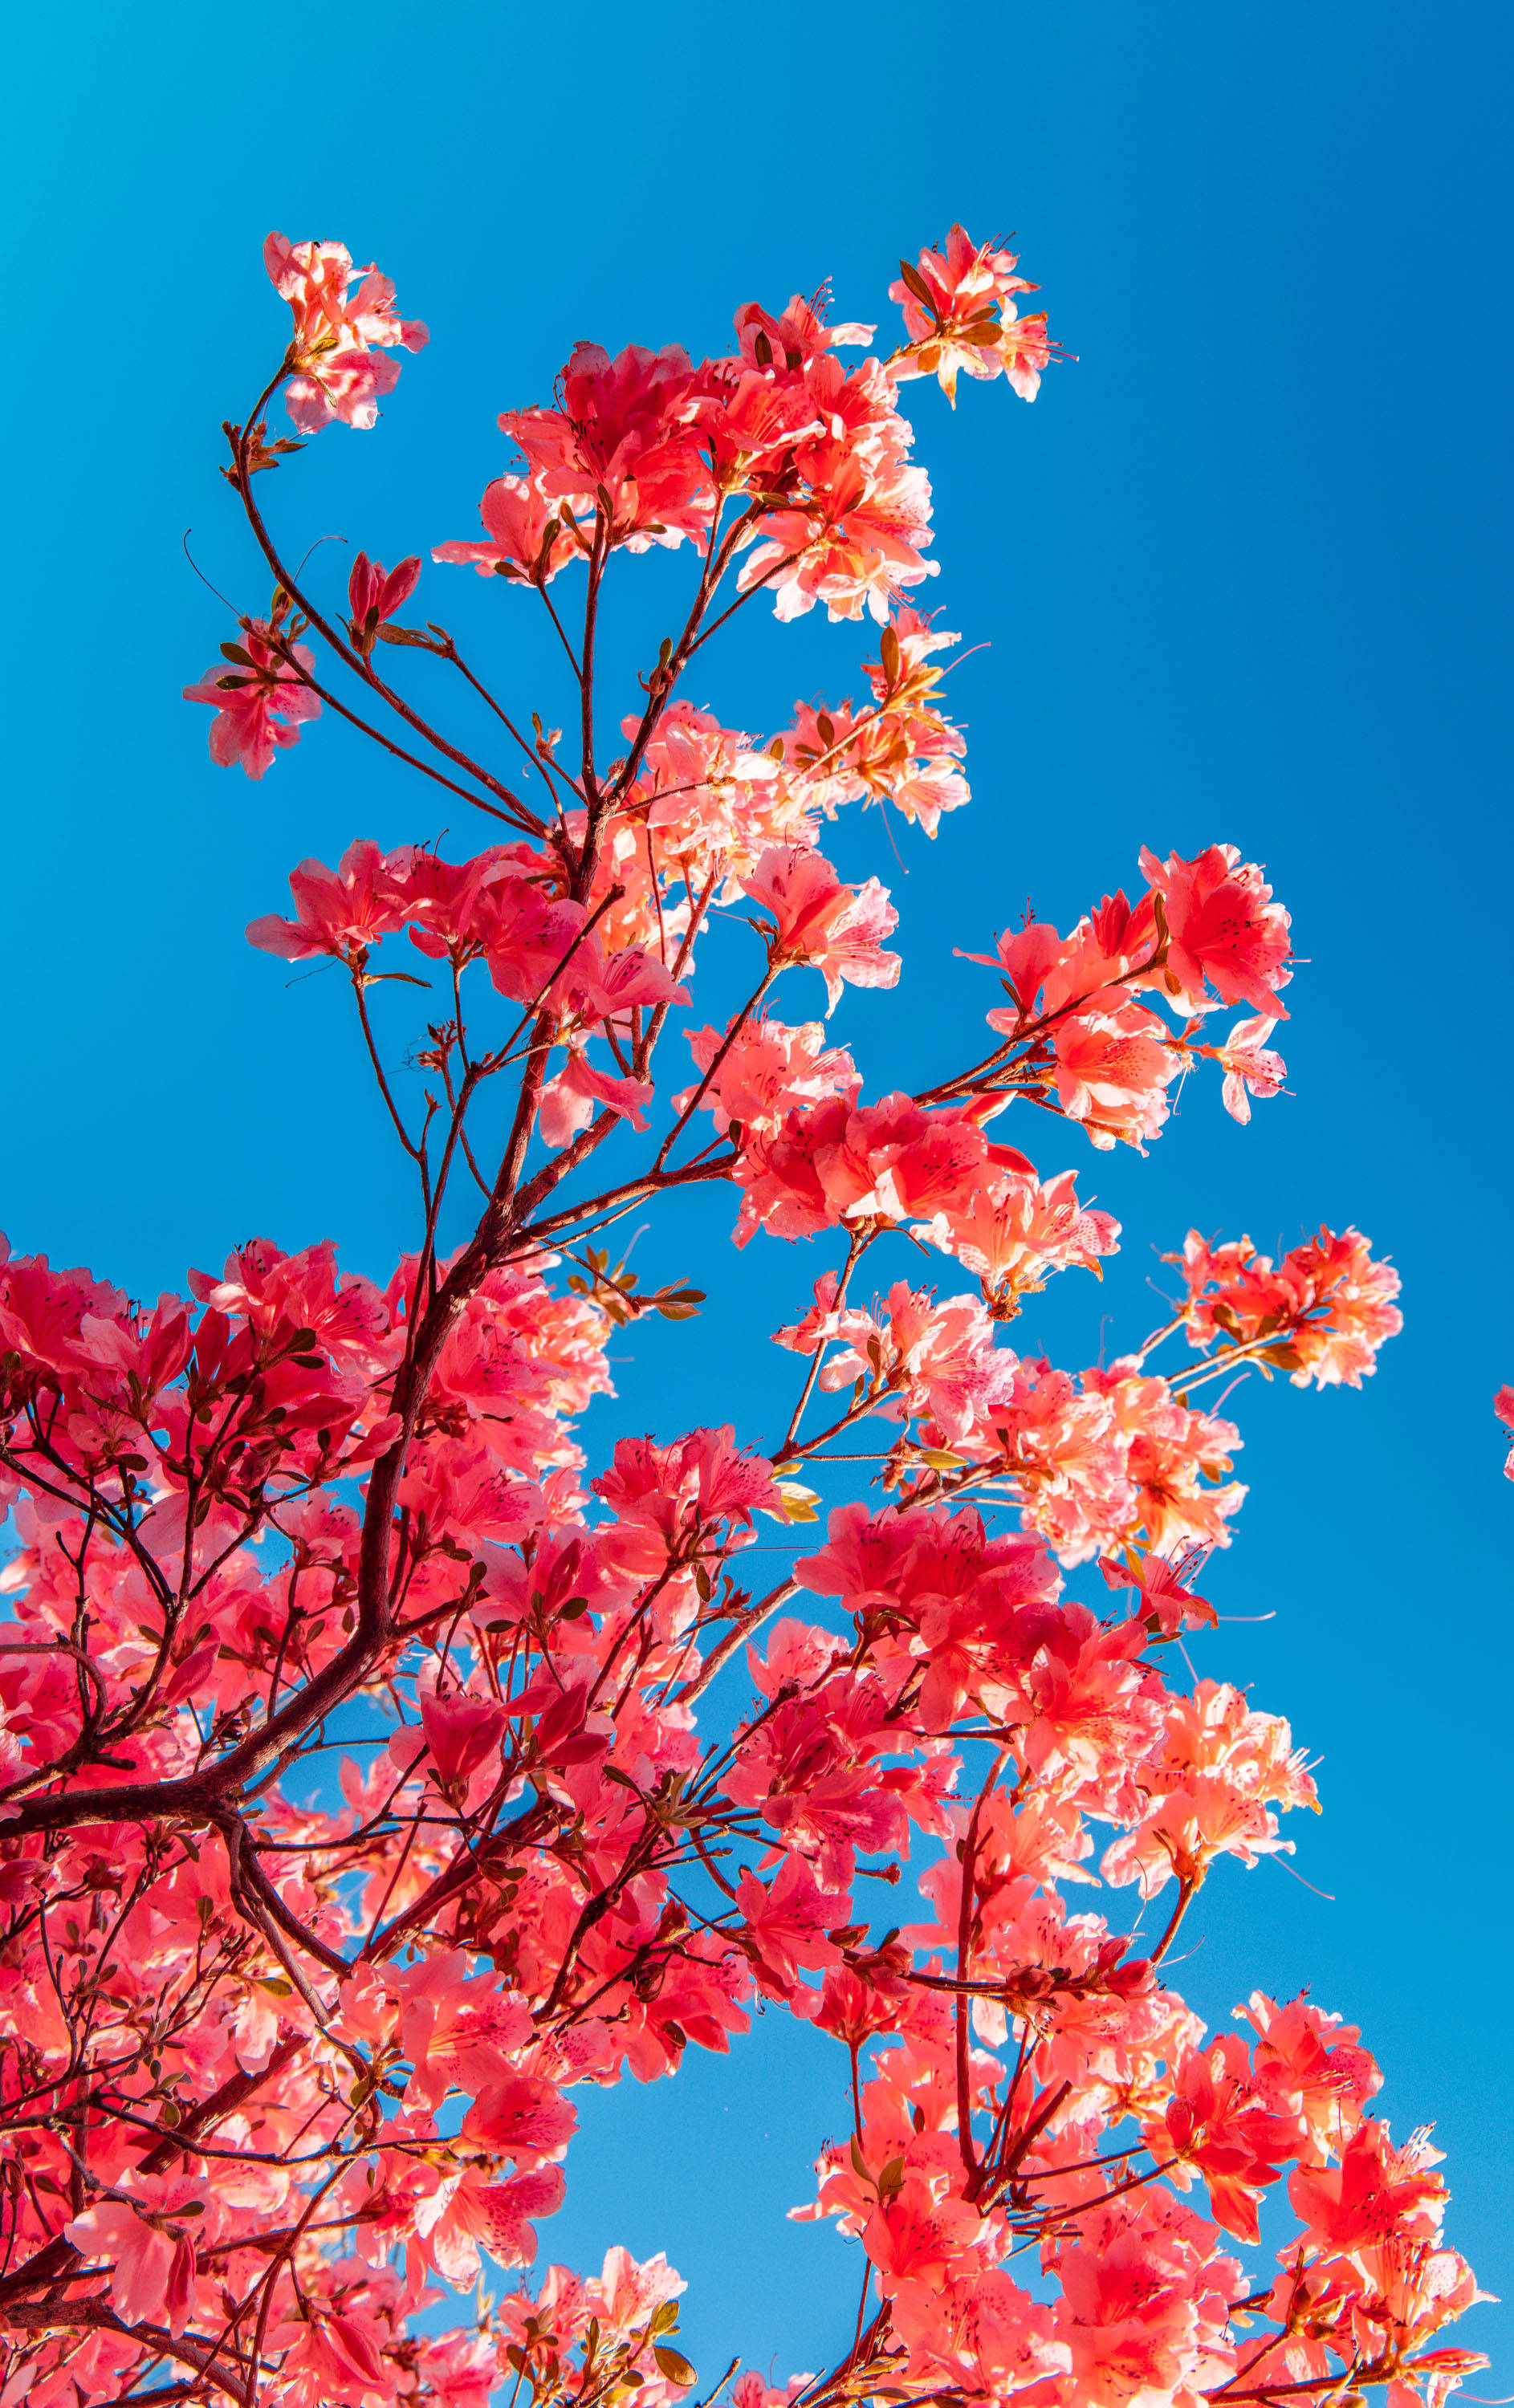 杜鹃是中国三大自然野生名花之一,世界四大高山花卉之一,色彩艳丽